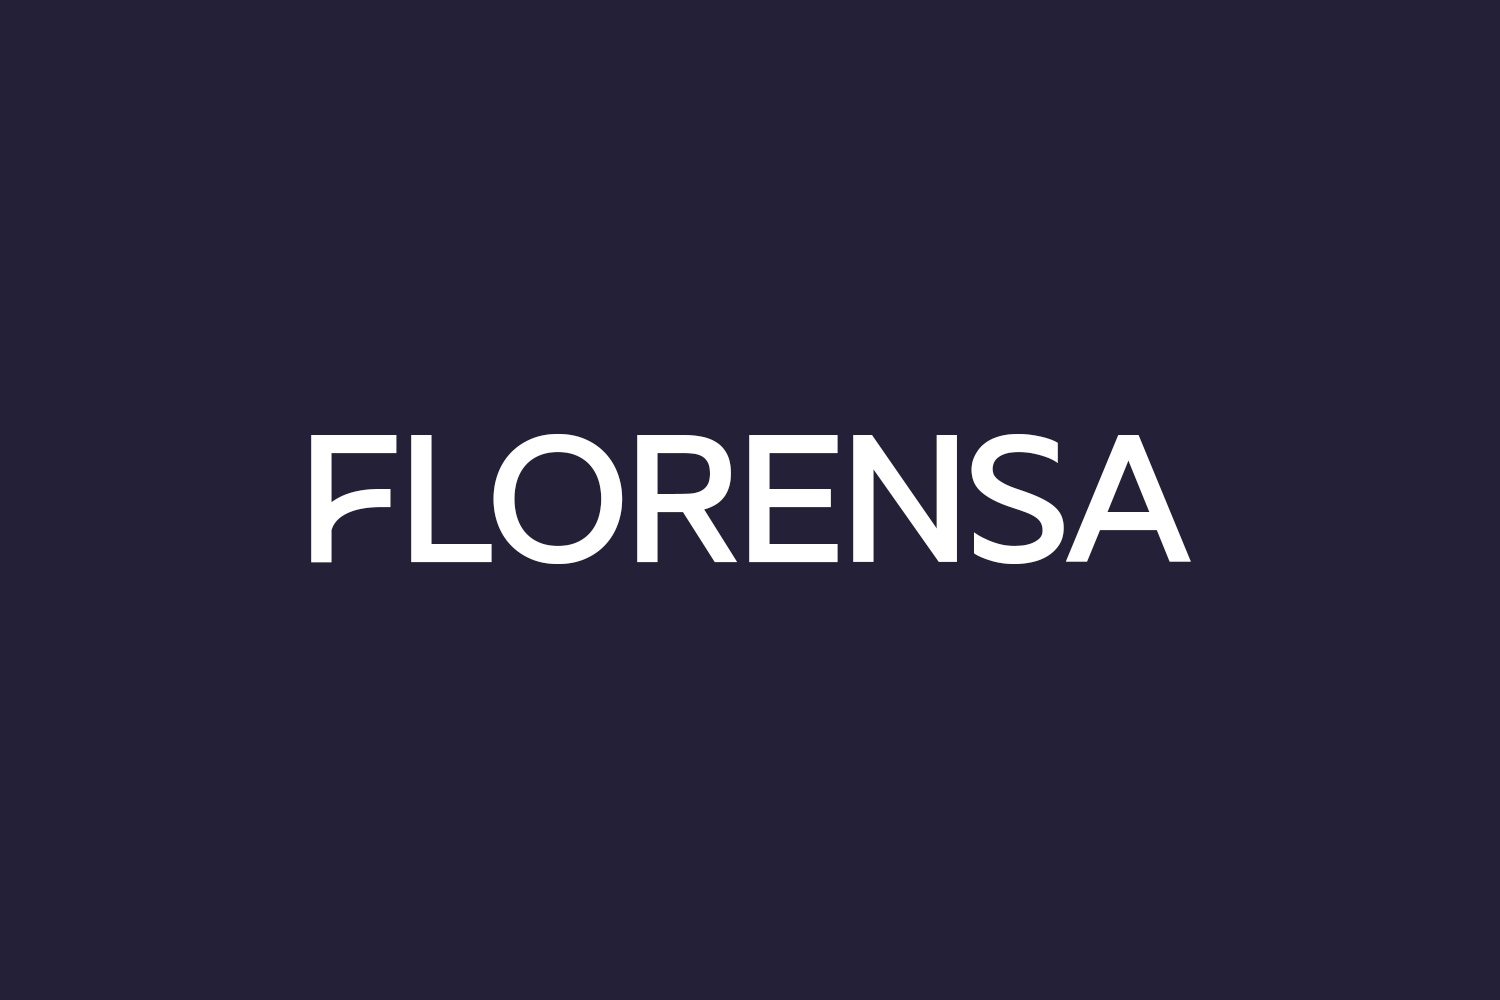 Florensa Free Font